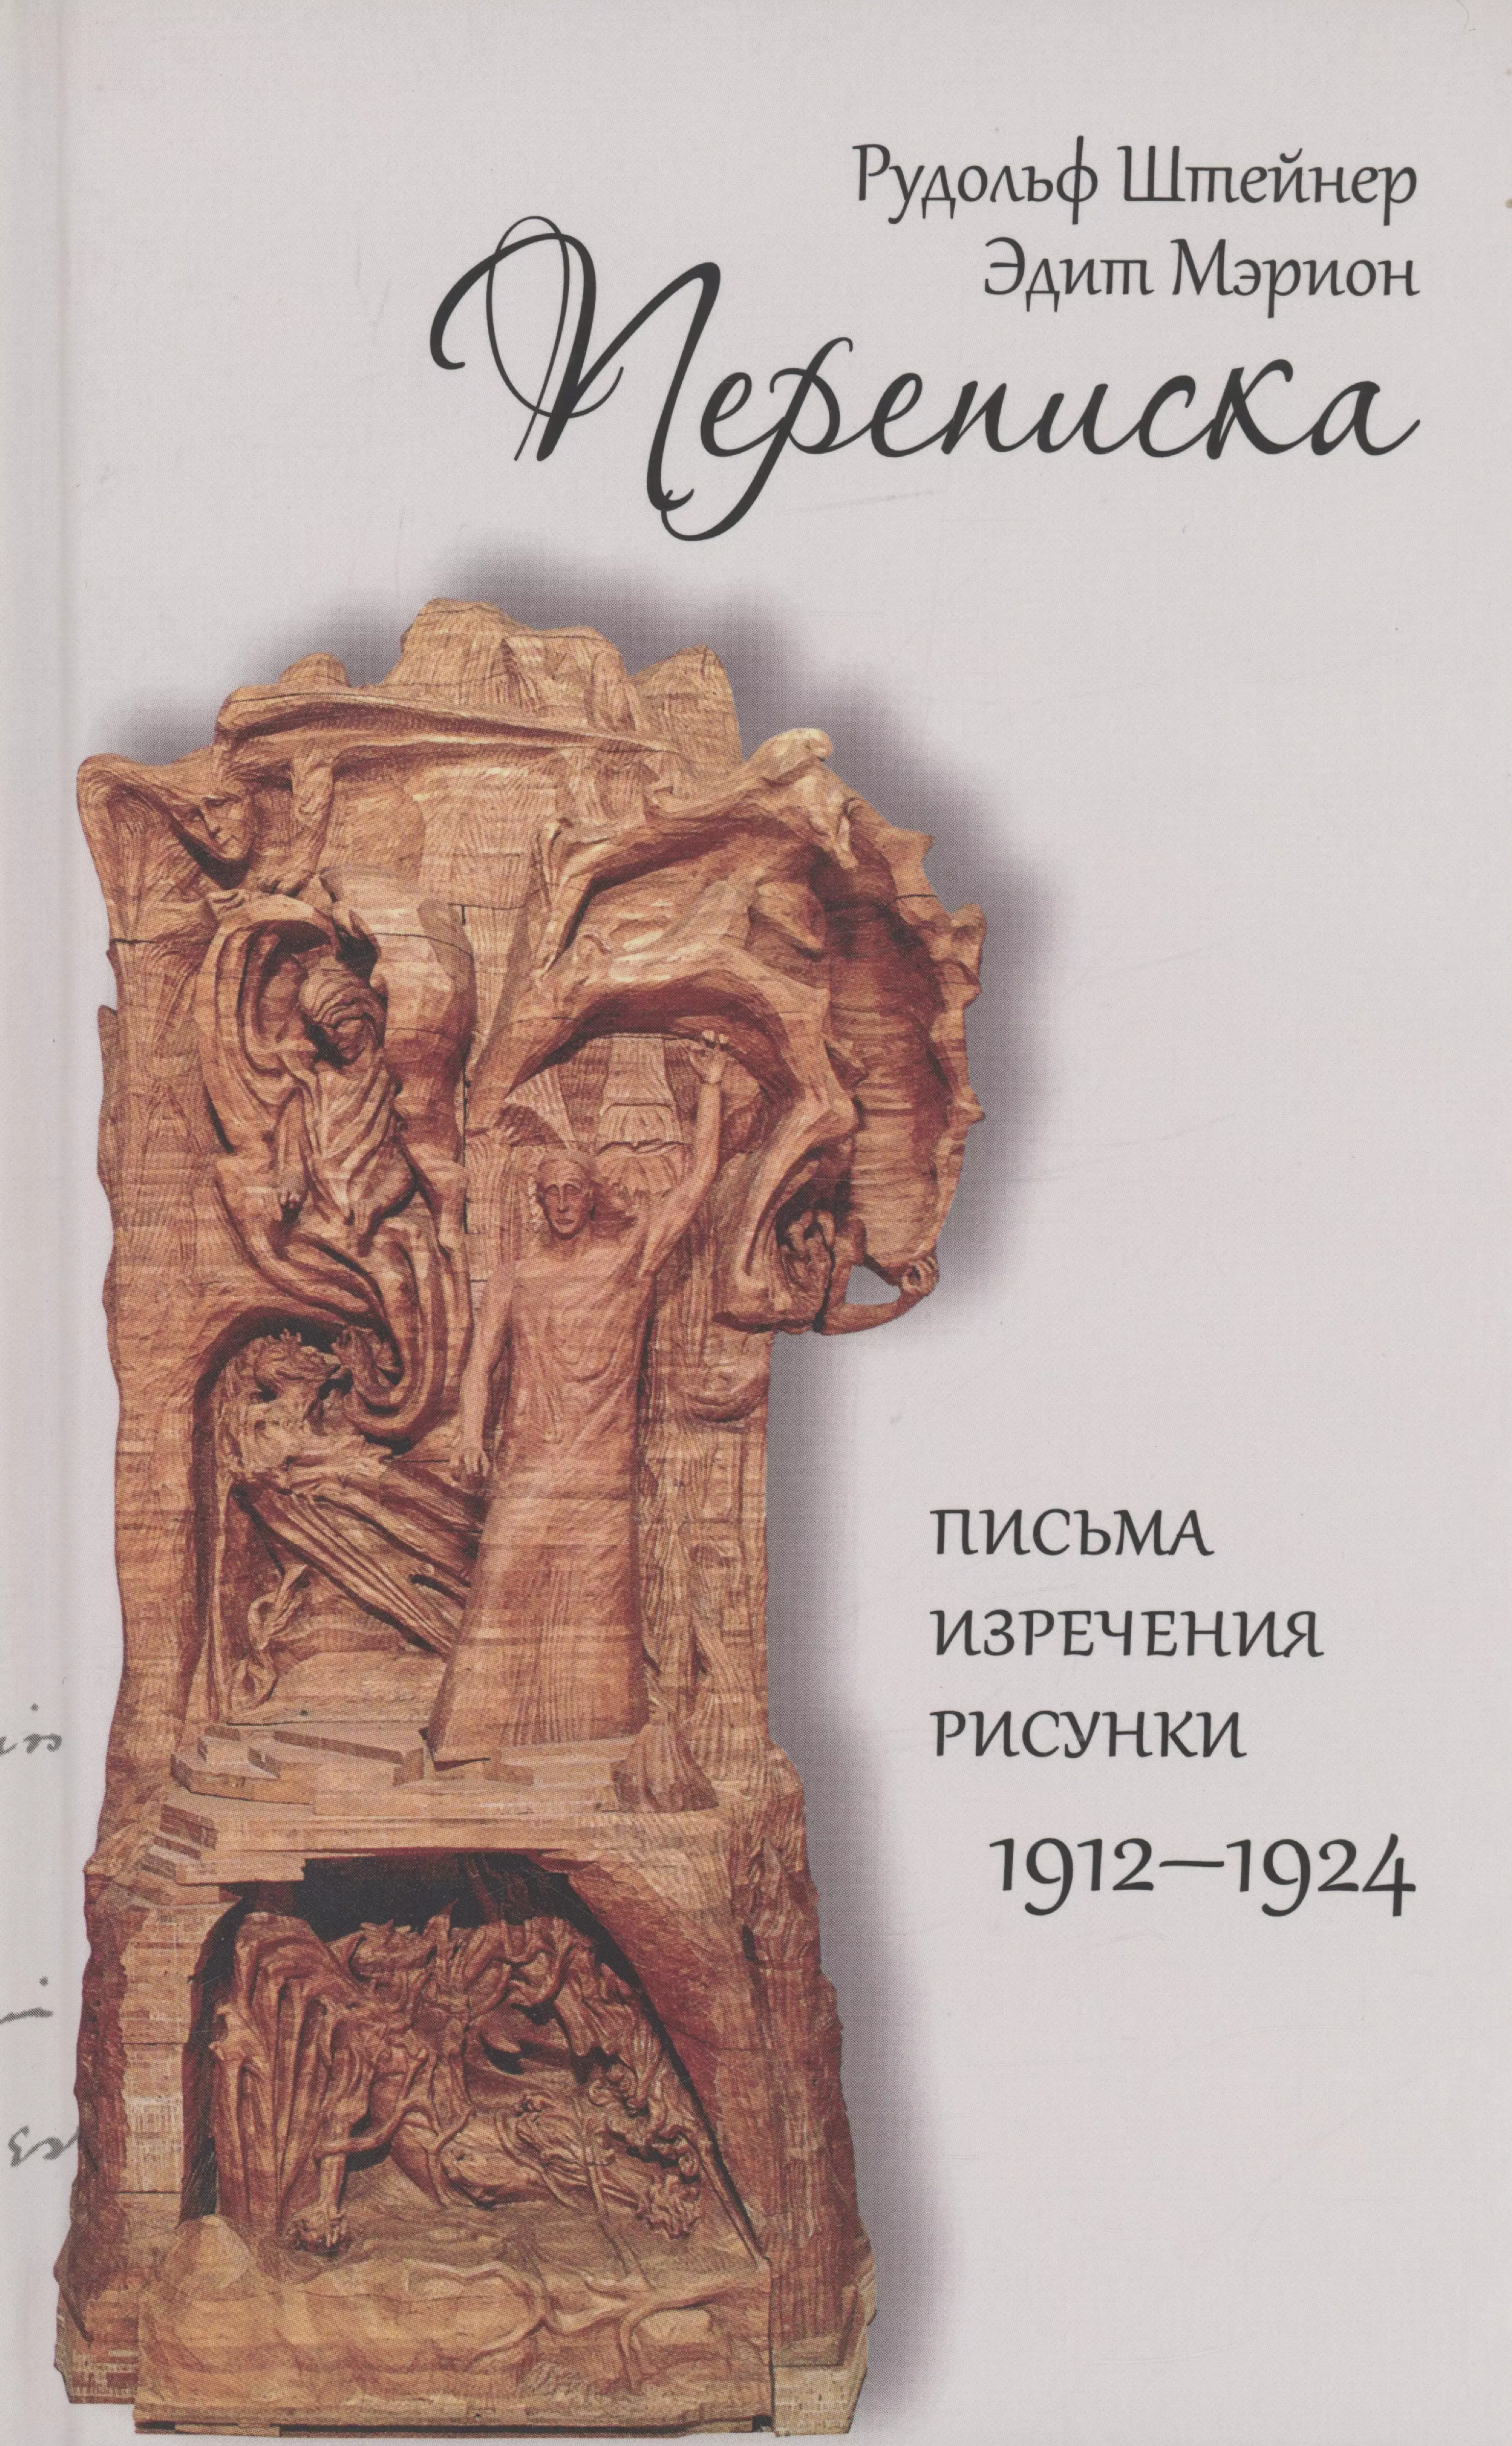 Штейнер Рудольф - Переписка. Письма-изречения-рисунки 1912-1924